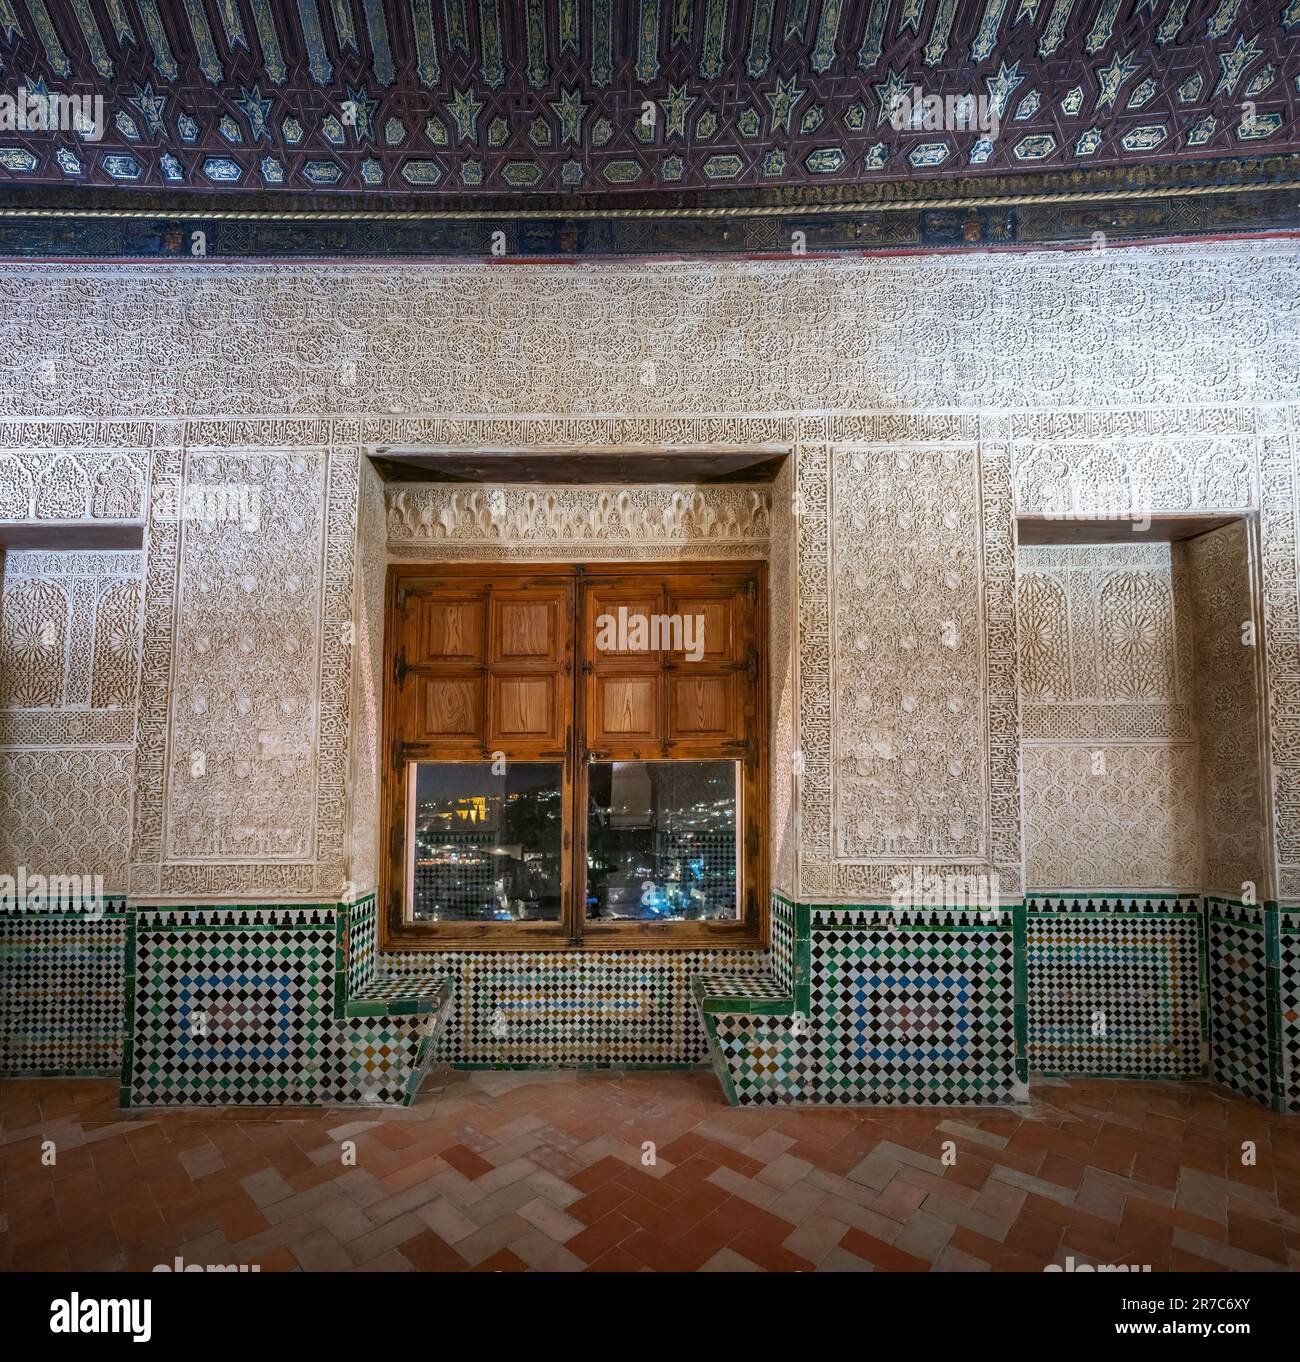 Salle dorée (Cuarto Dorado) aux palais Nasrides de l'Alhambra - Grenade, Andalousie, Espagne Banque D'Images